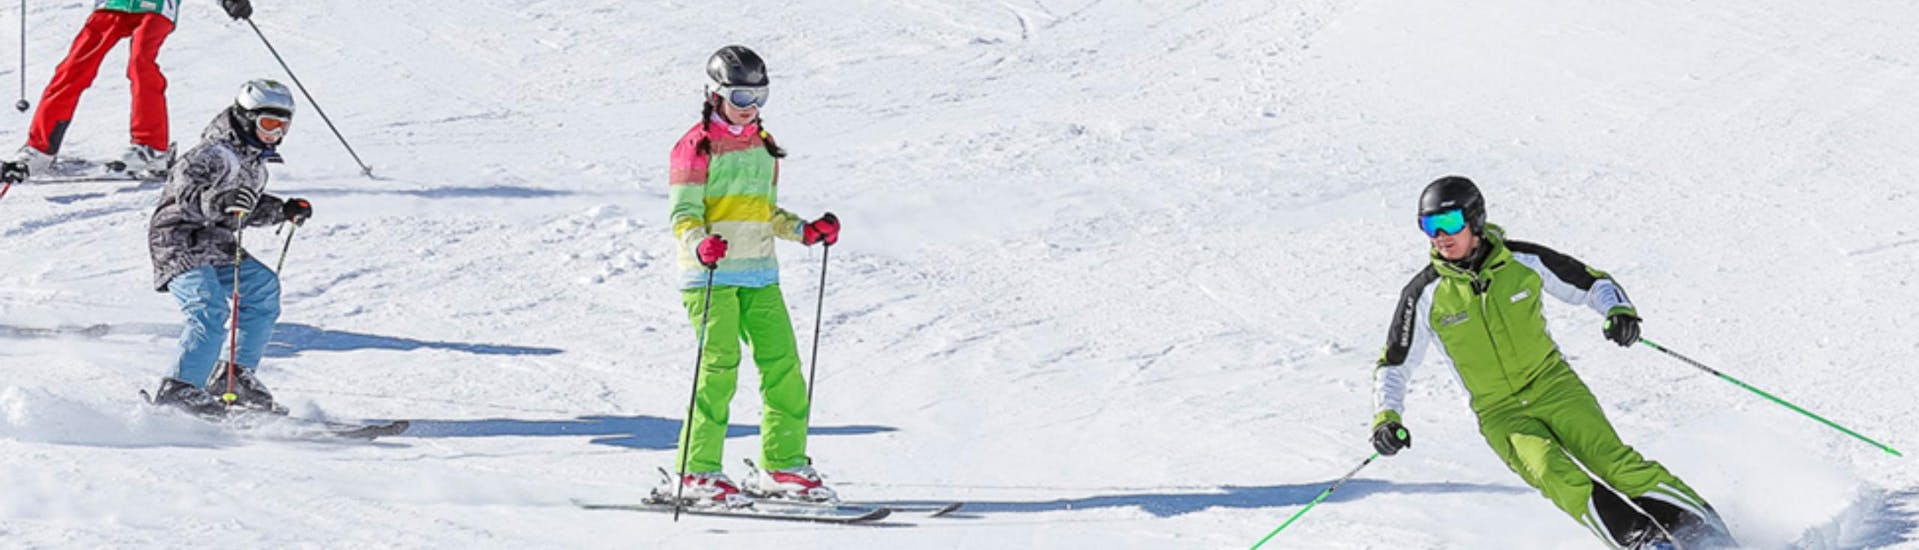 Cours de ski Enfants dès 11 ans pour Tous niveaux.